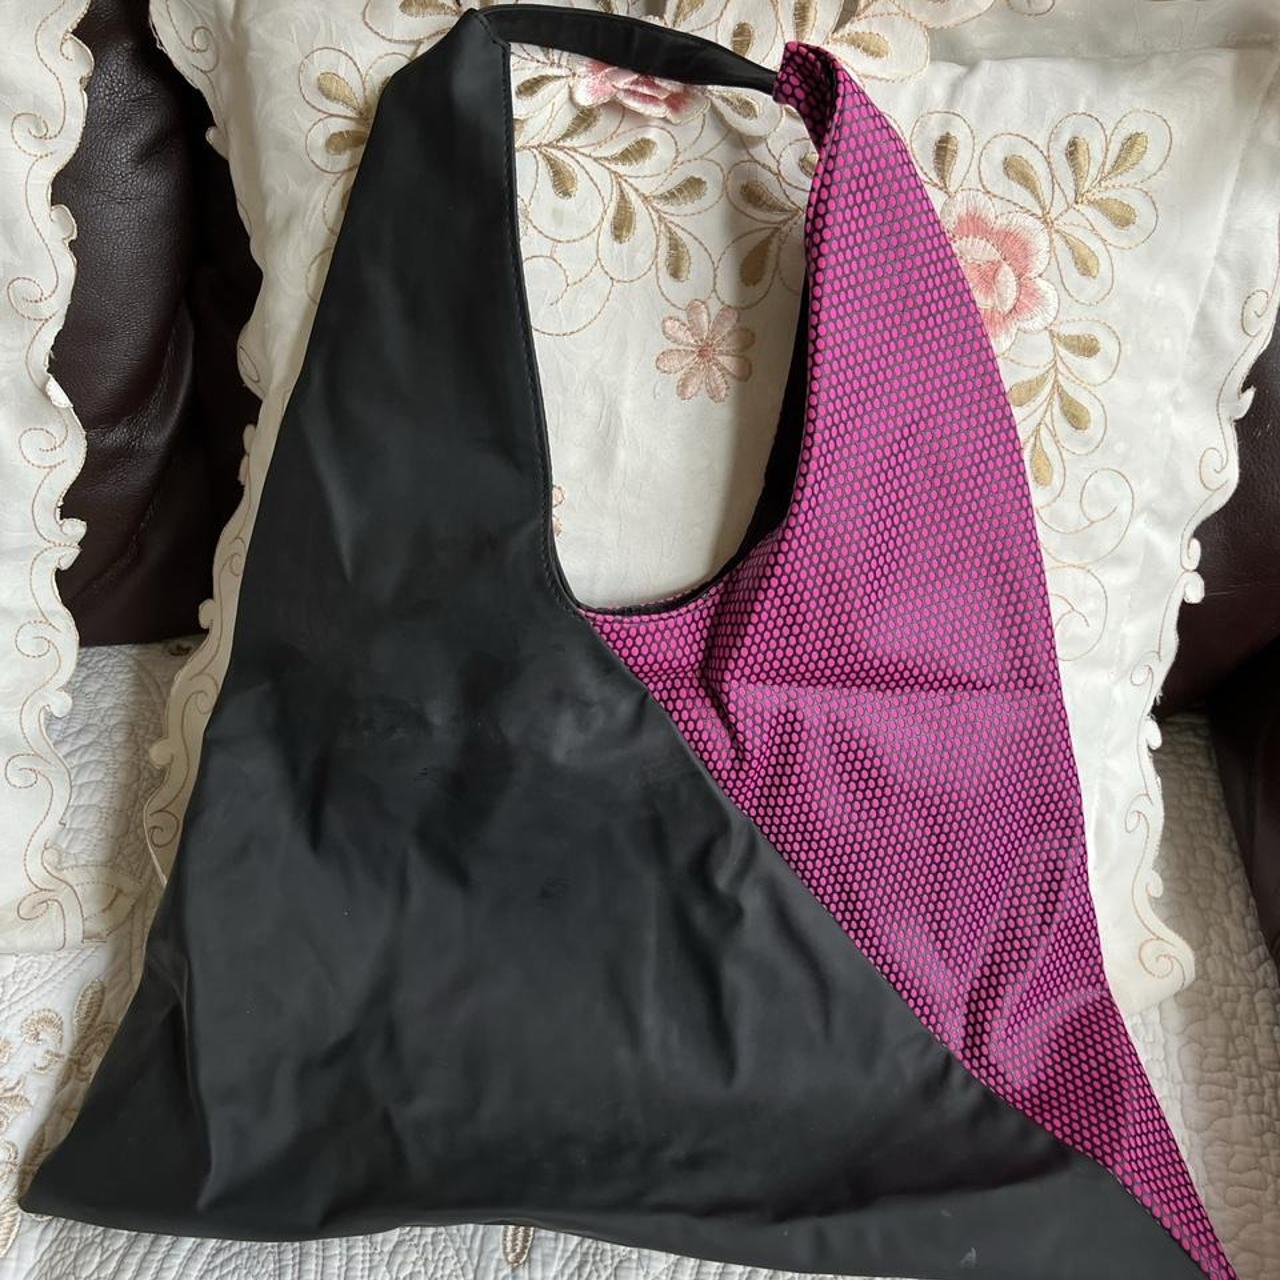 Product Image 2 - Shu Uemura Colorblock Tote Bag